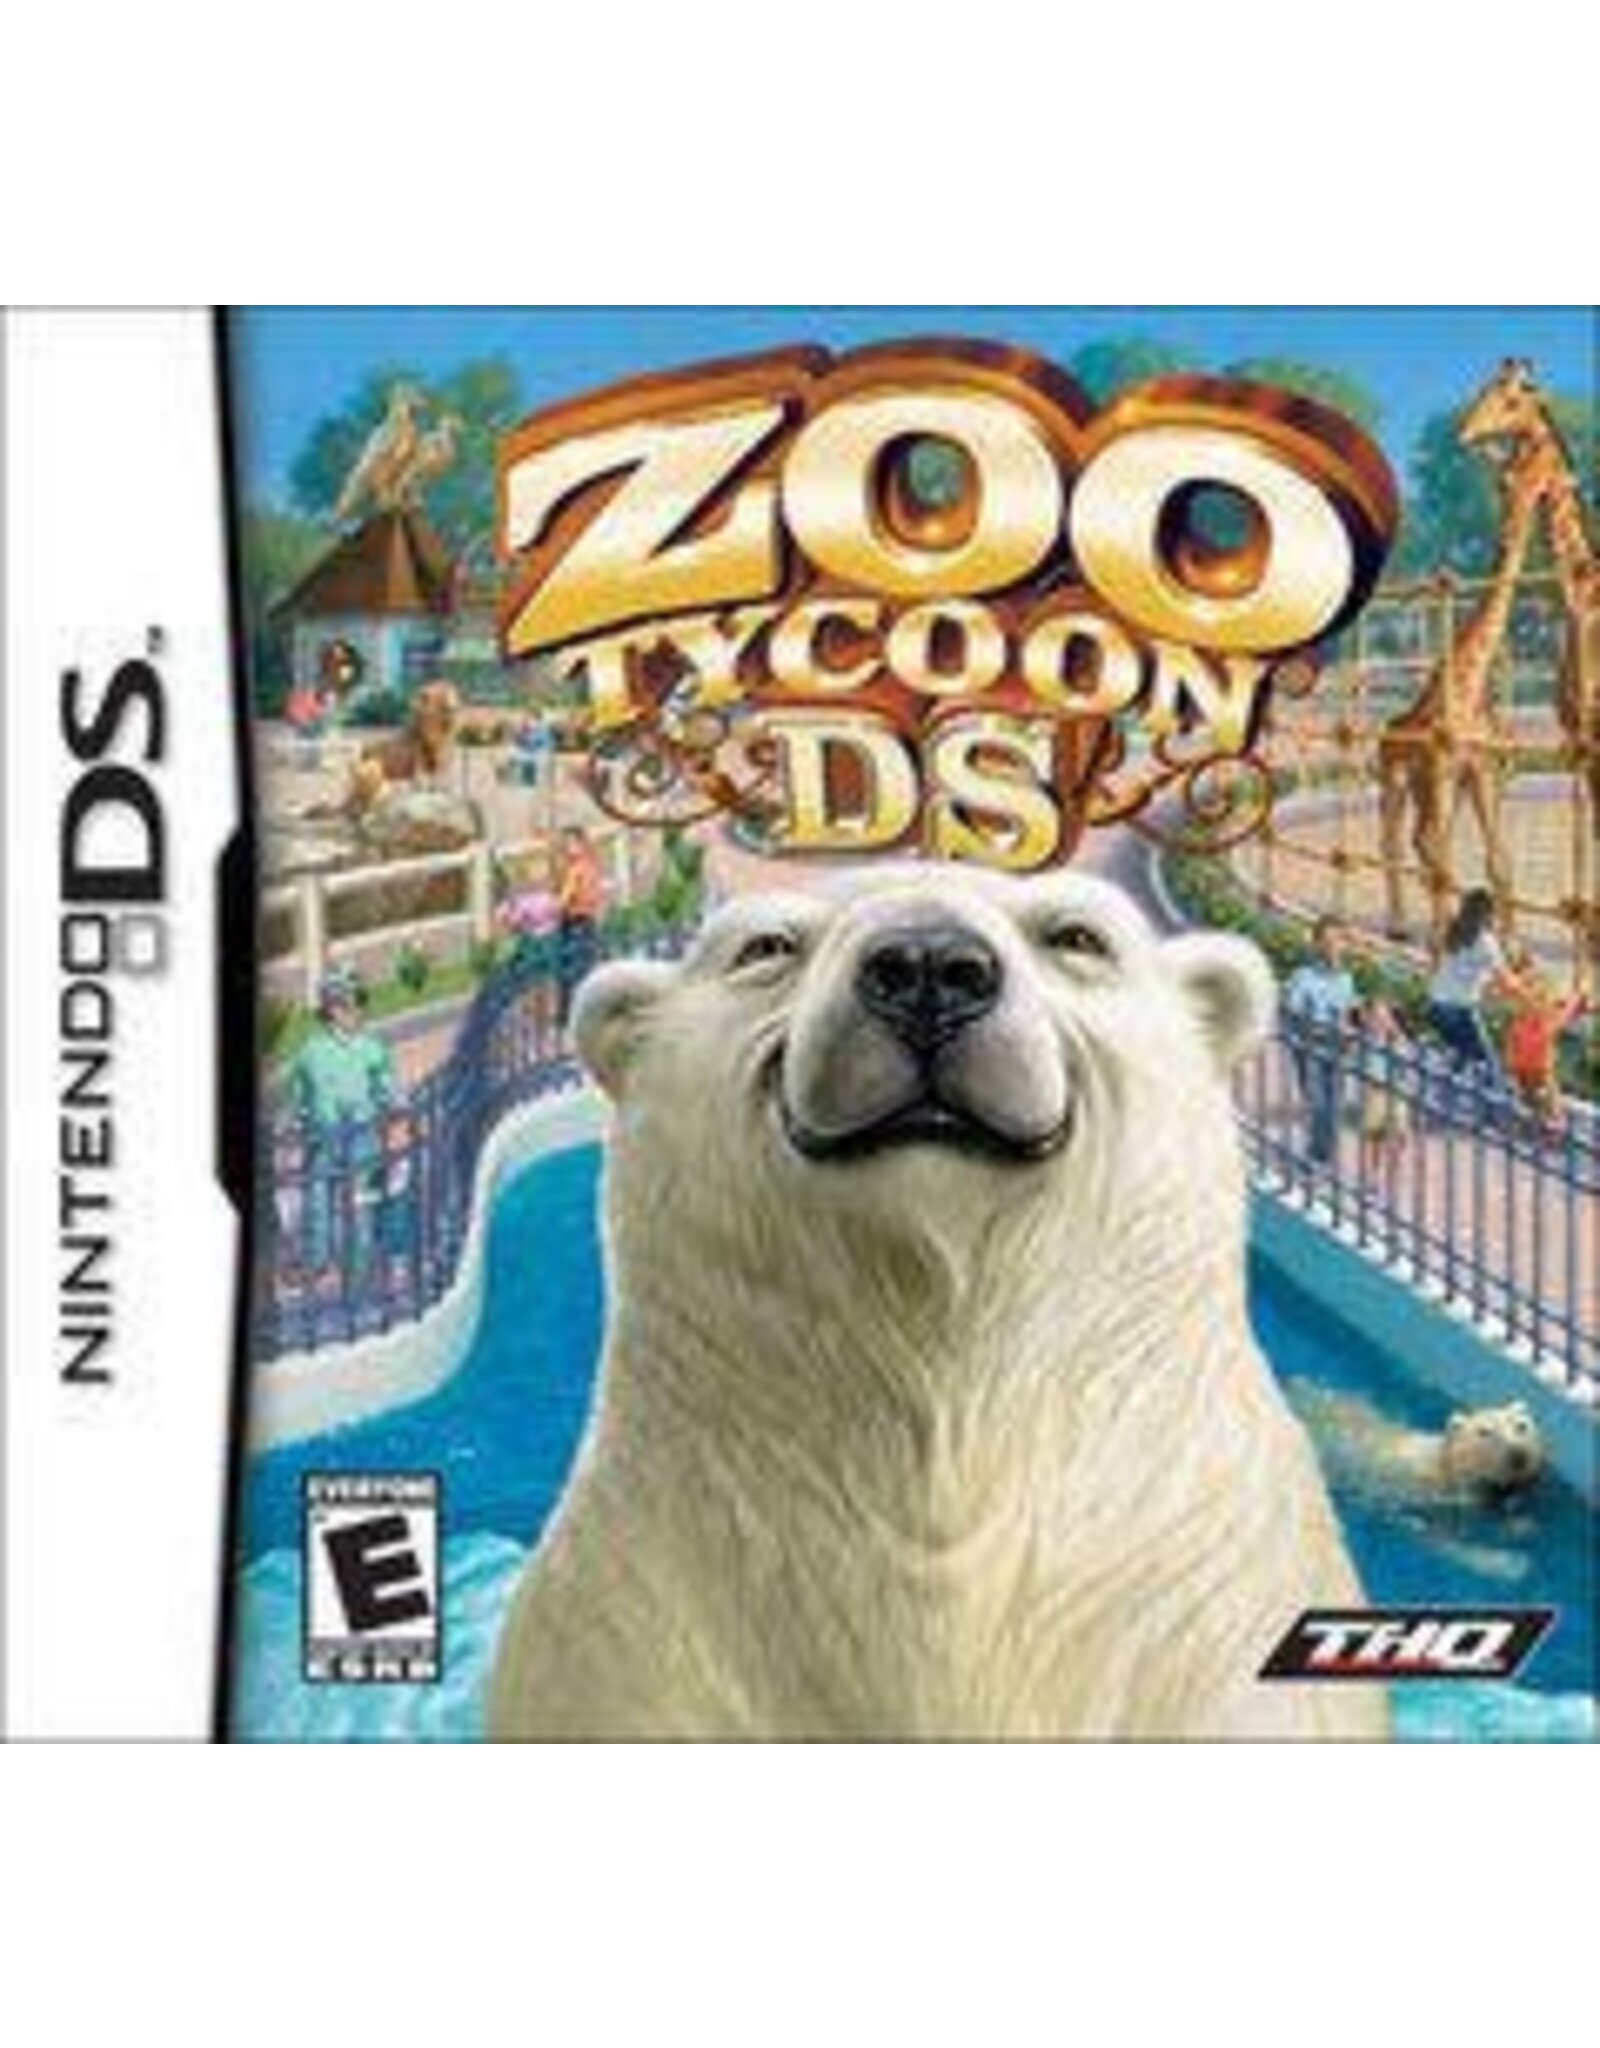 Nintendo DS Zoo Tycoon (Used)